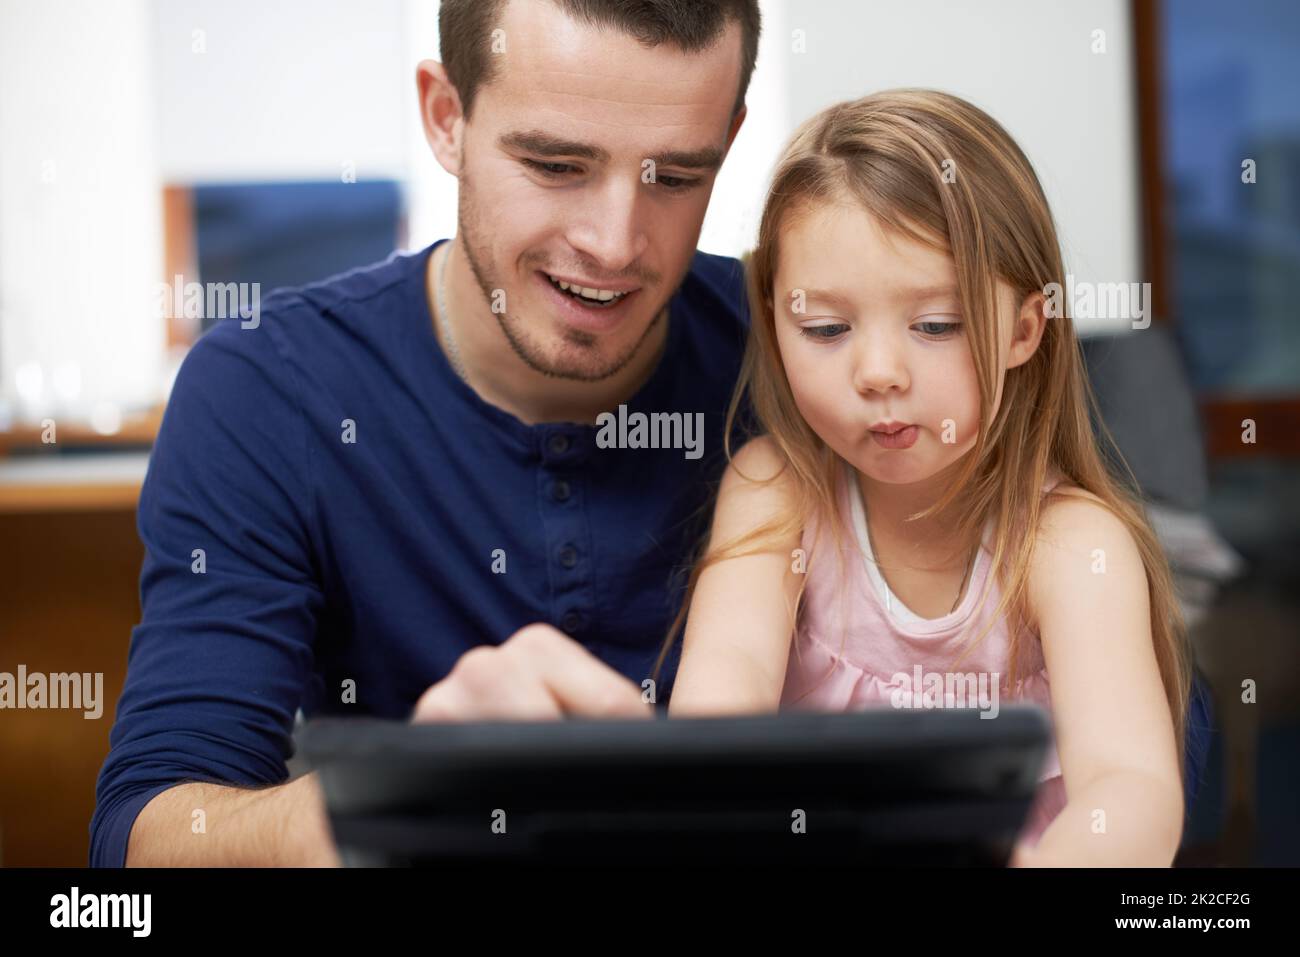 Lassen Sie sich von Papa zeigen, wie man das macht. Vater und Tochter verbinden sich über Technologie. Stockfoto